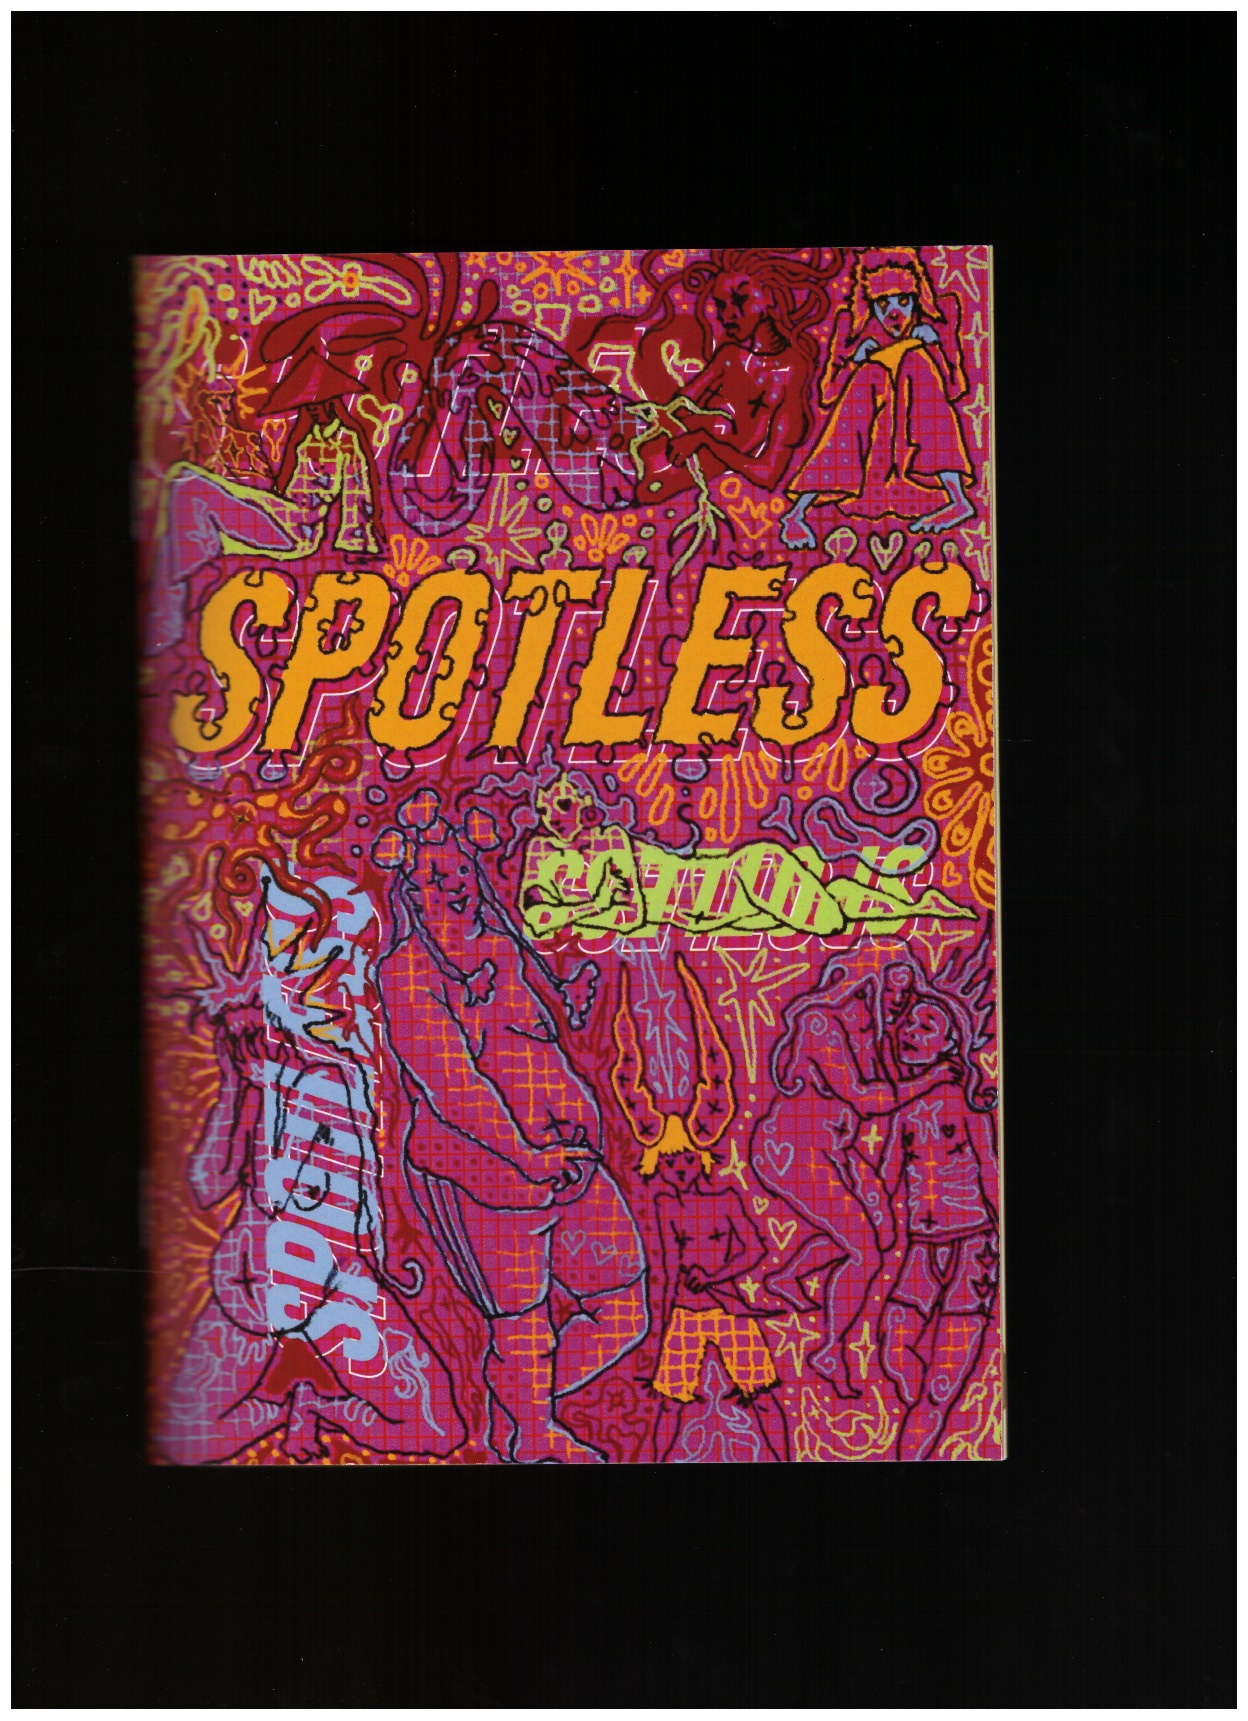 RIDSDILL SMITH, Chloe (ed.) - Spotless #1 – Fitting in